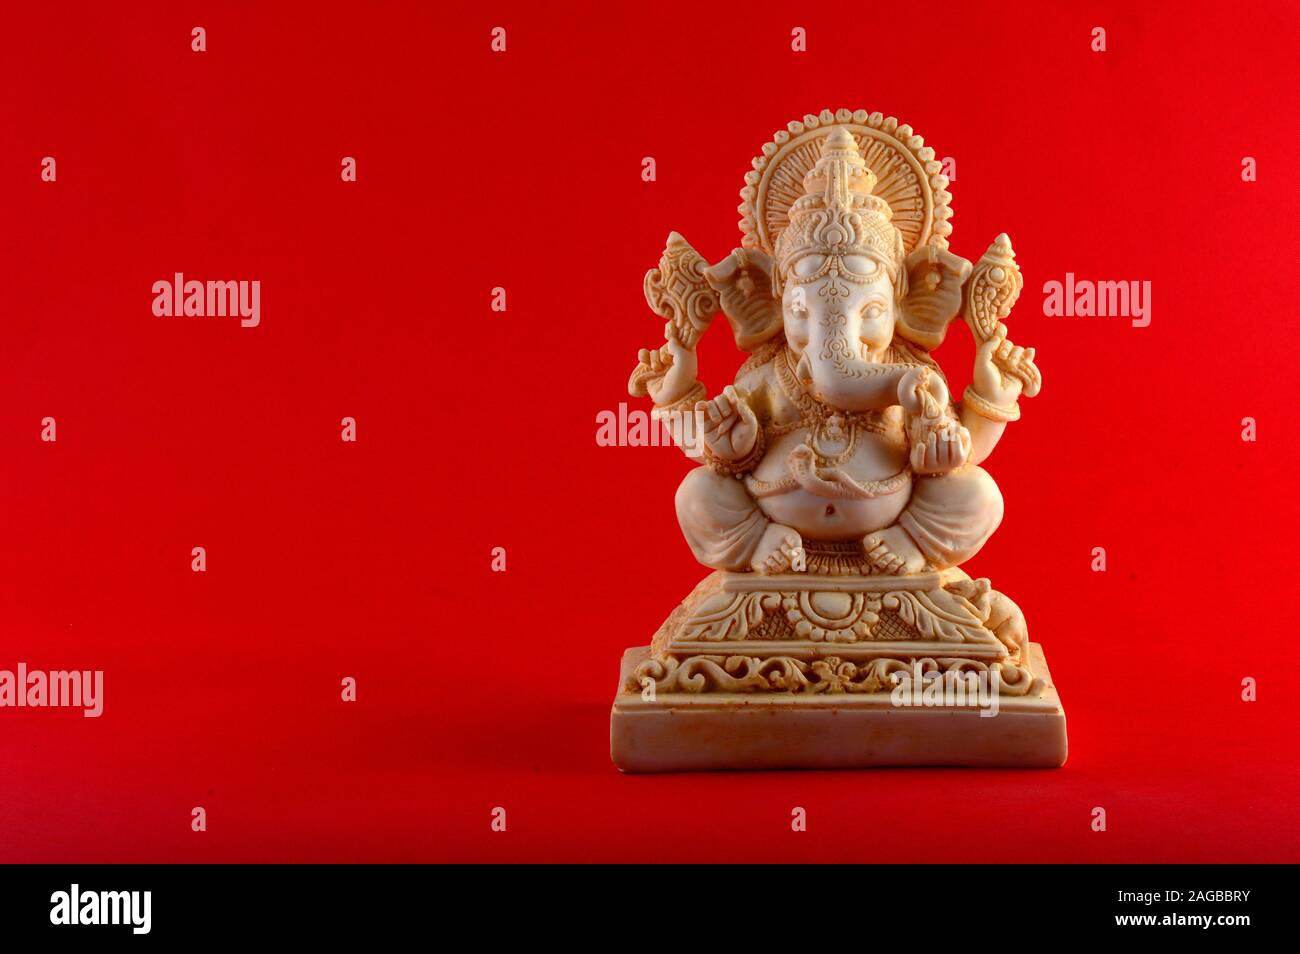 Hindu God Ganesha. Ganesha Idol on red background Stock Photo - Alamy